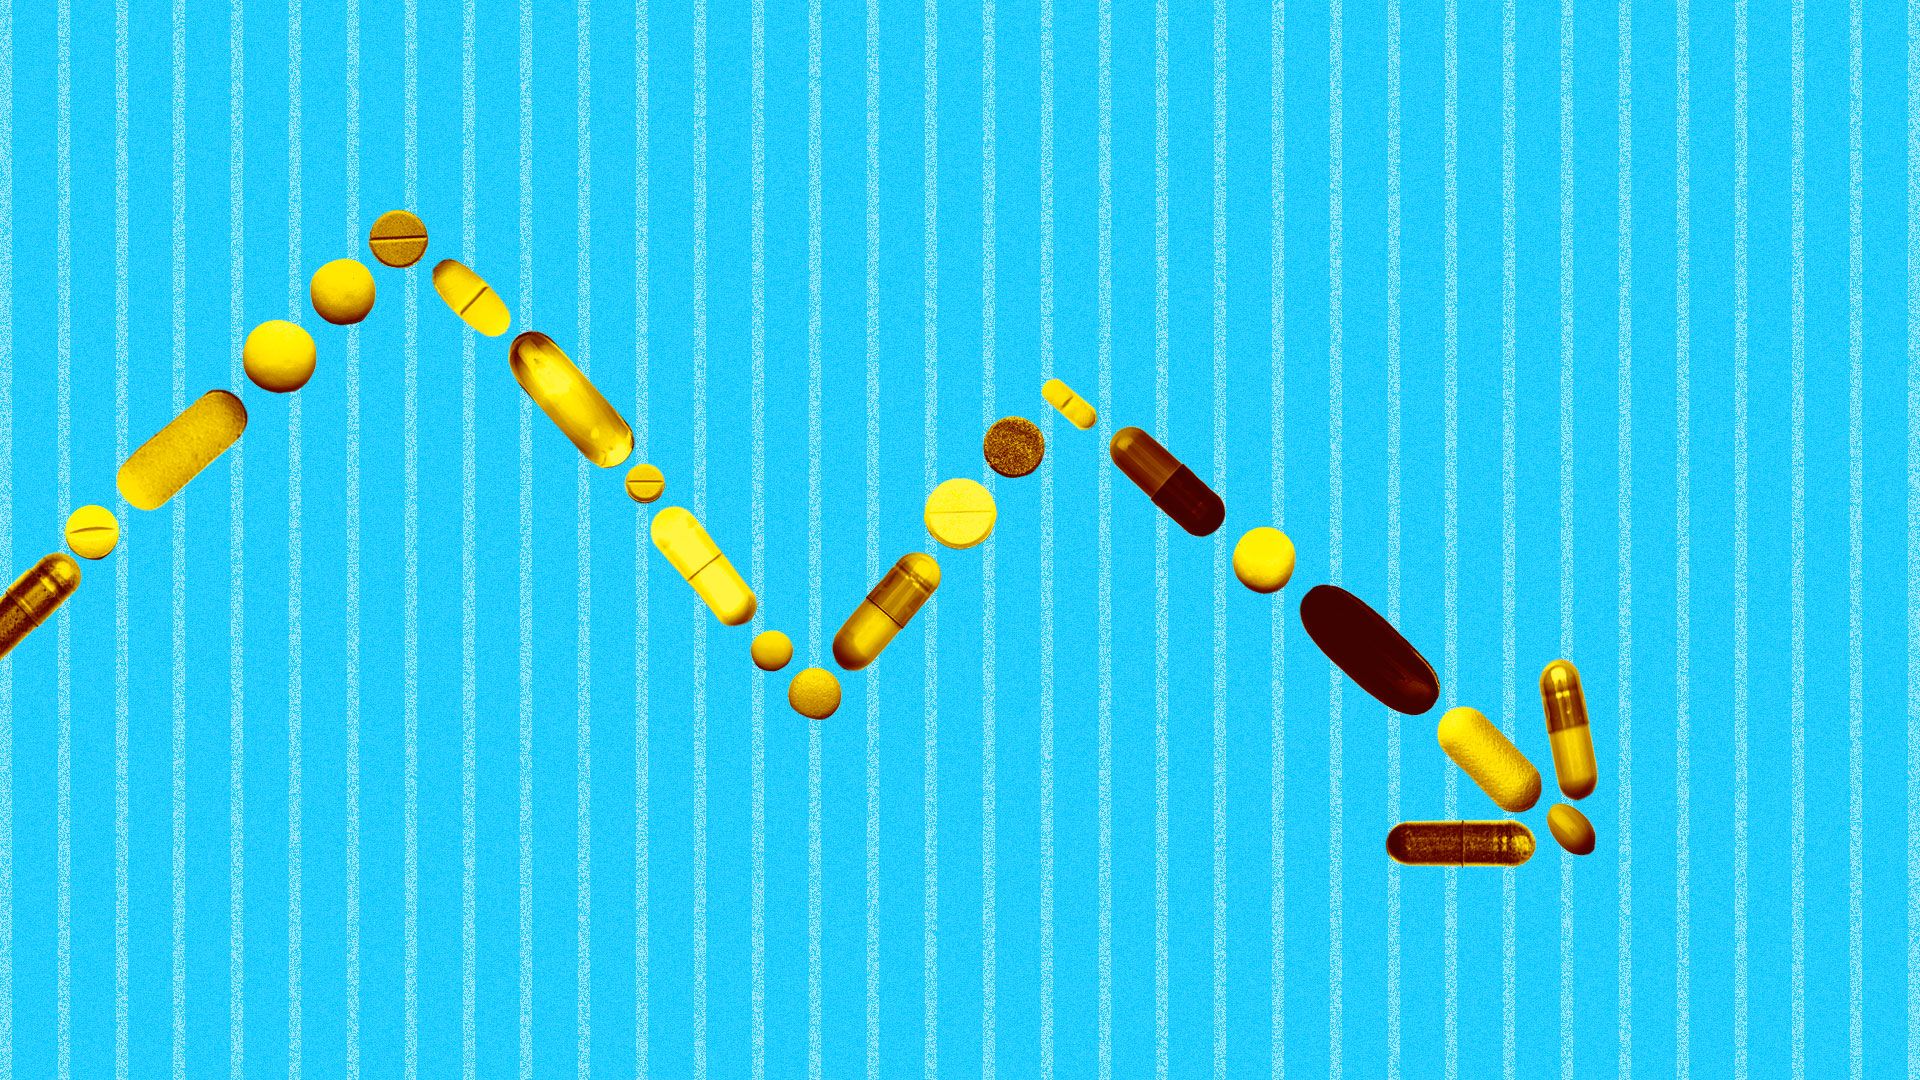 Illustration of a downward market trend line made up of golden pills.